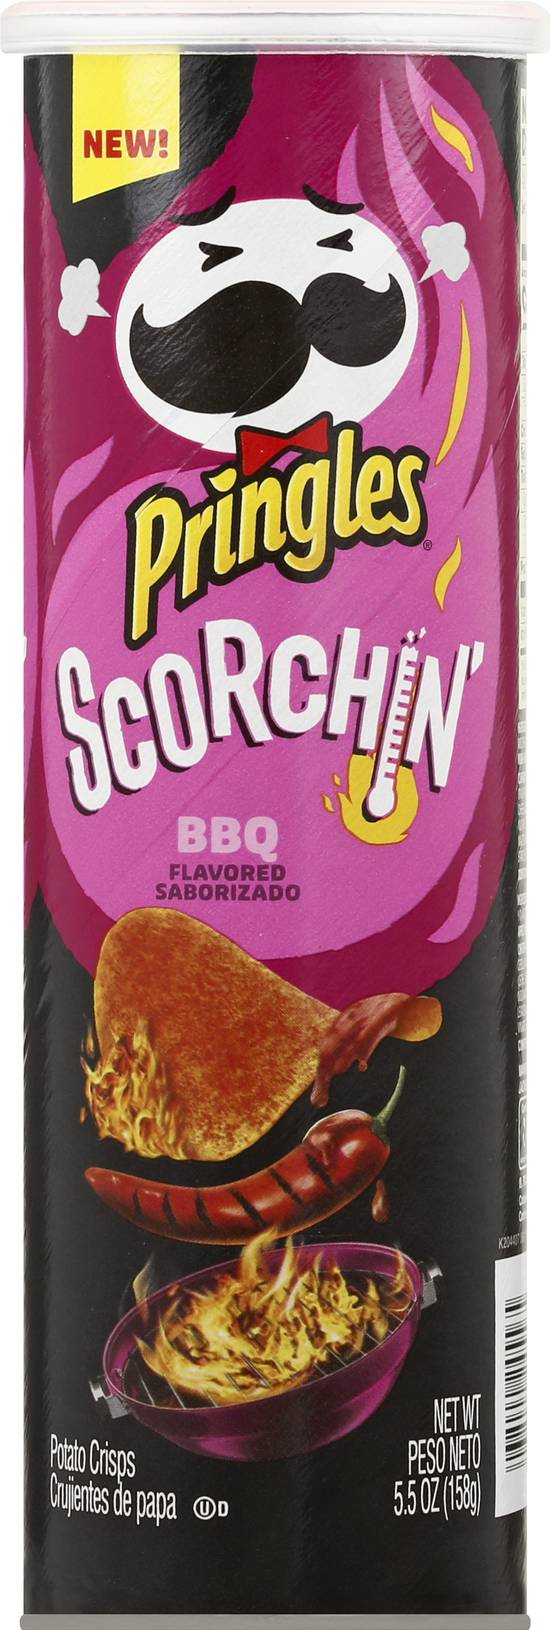 Pringles Scorchin' Potato Crisps (bbq)